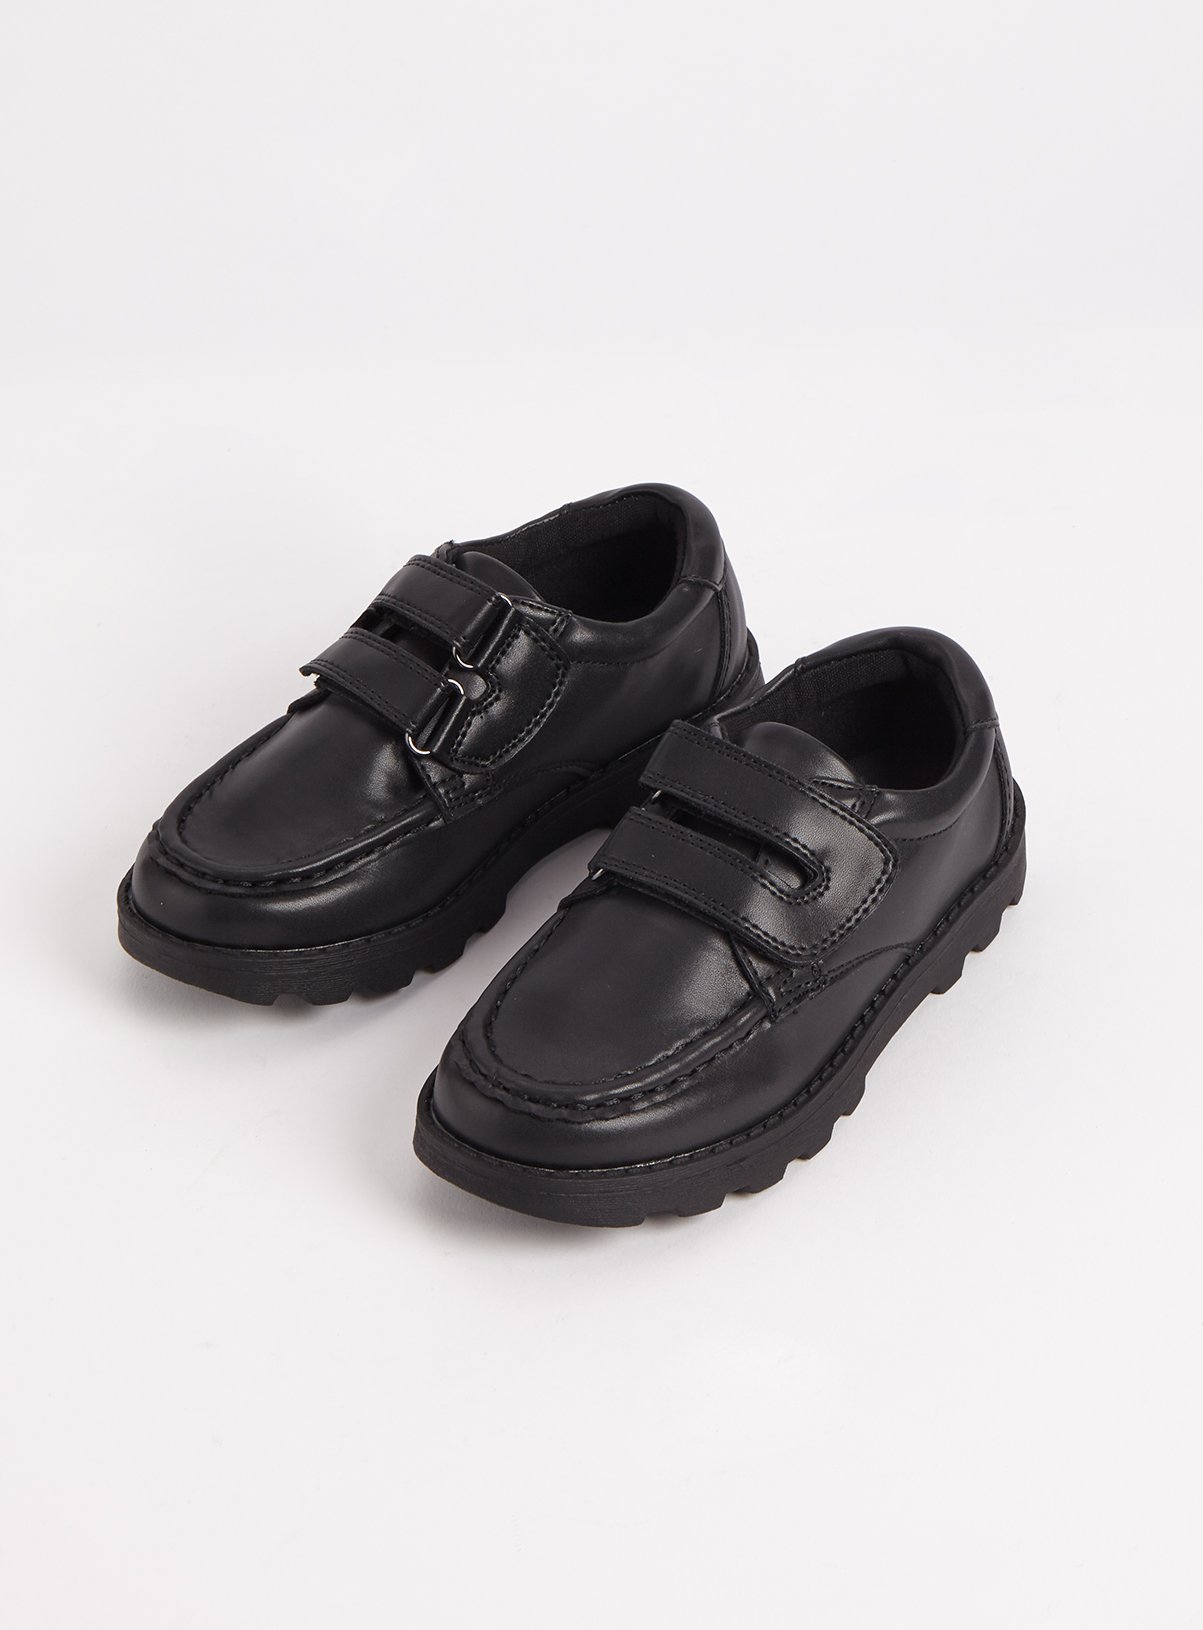 infant boys school shoes